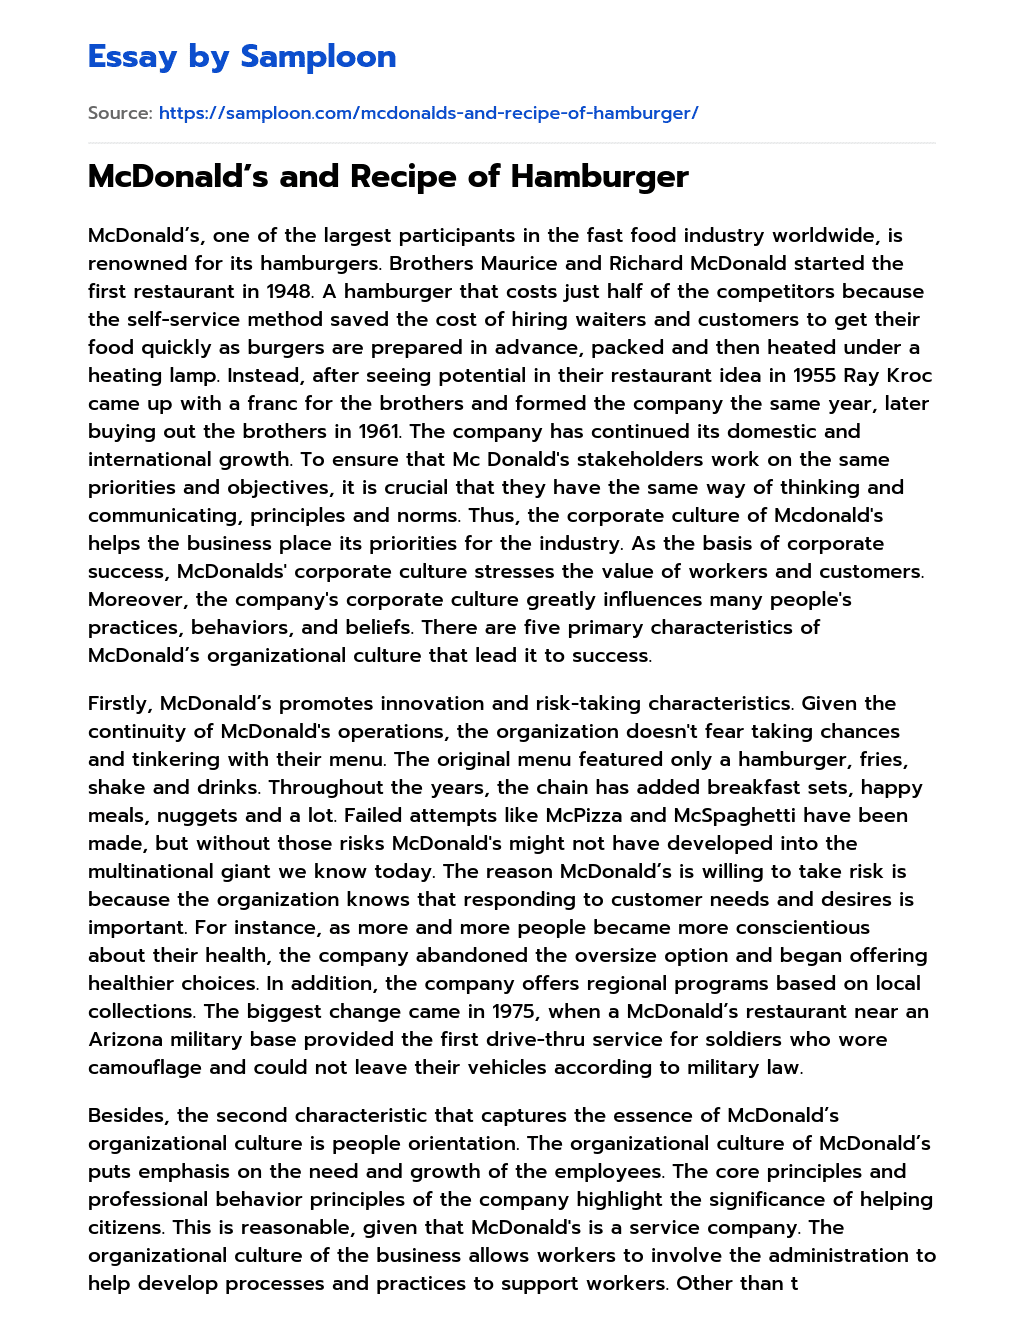 McDonald’s and Recipe of Hamburger essay